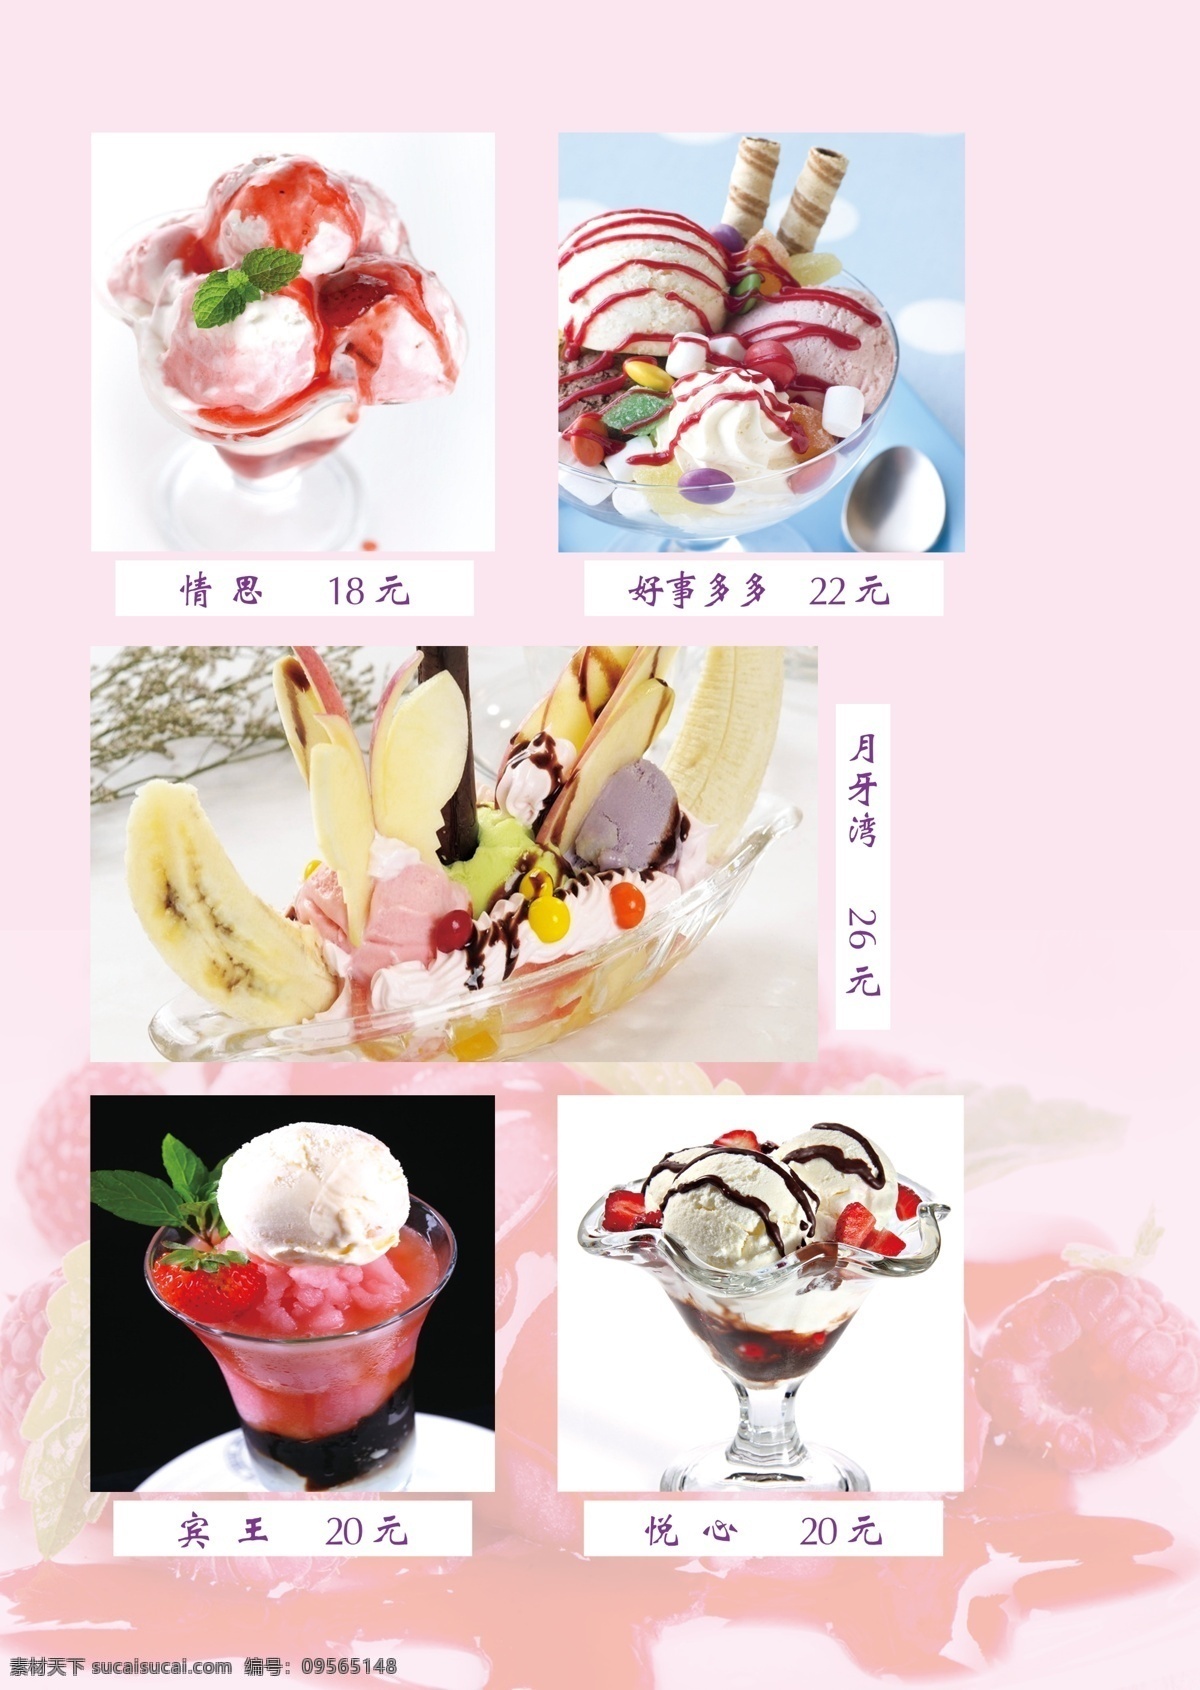 花式冰淇淋 冰淇淋 草莓 果味 饮品 爽口 菜单菜谱